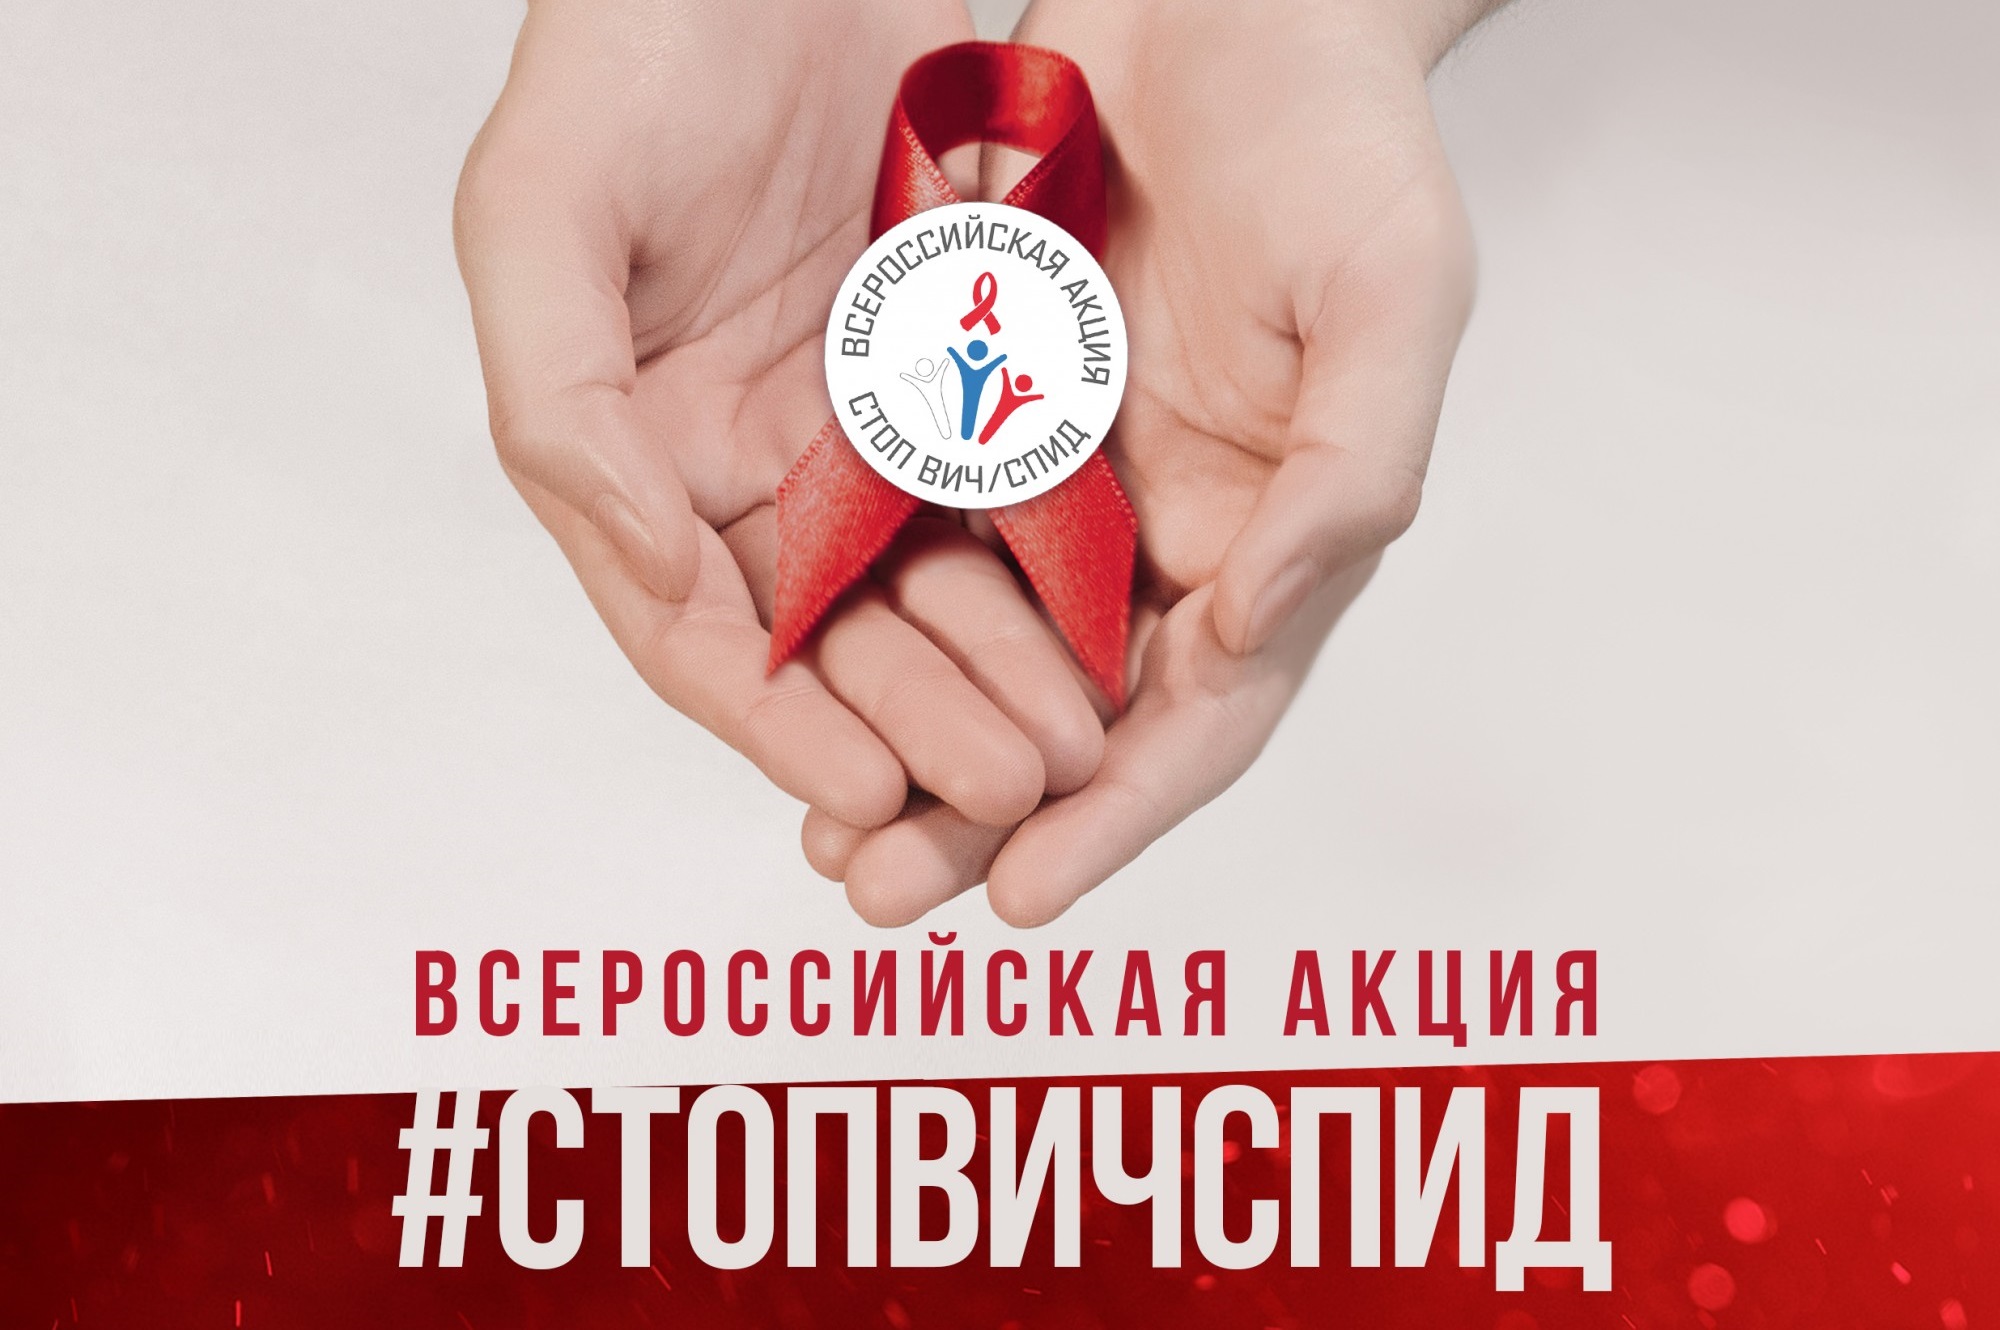 Форум «Остановим вместе ВИЧ/СПИД, Кузбасс!» проходит для старшеклассников и студентов с 26 ноября по 1 декабря 